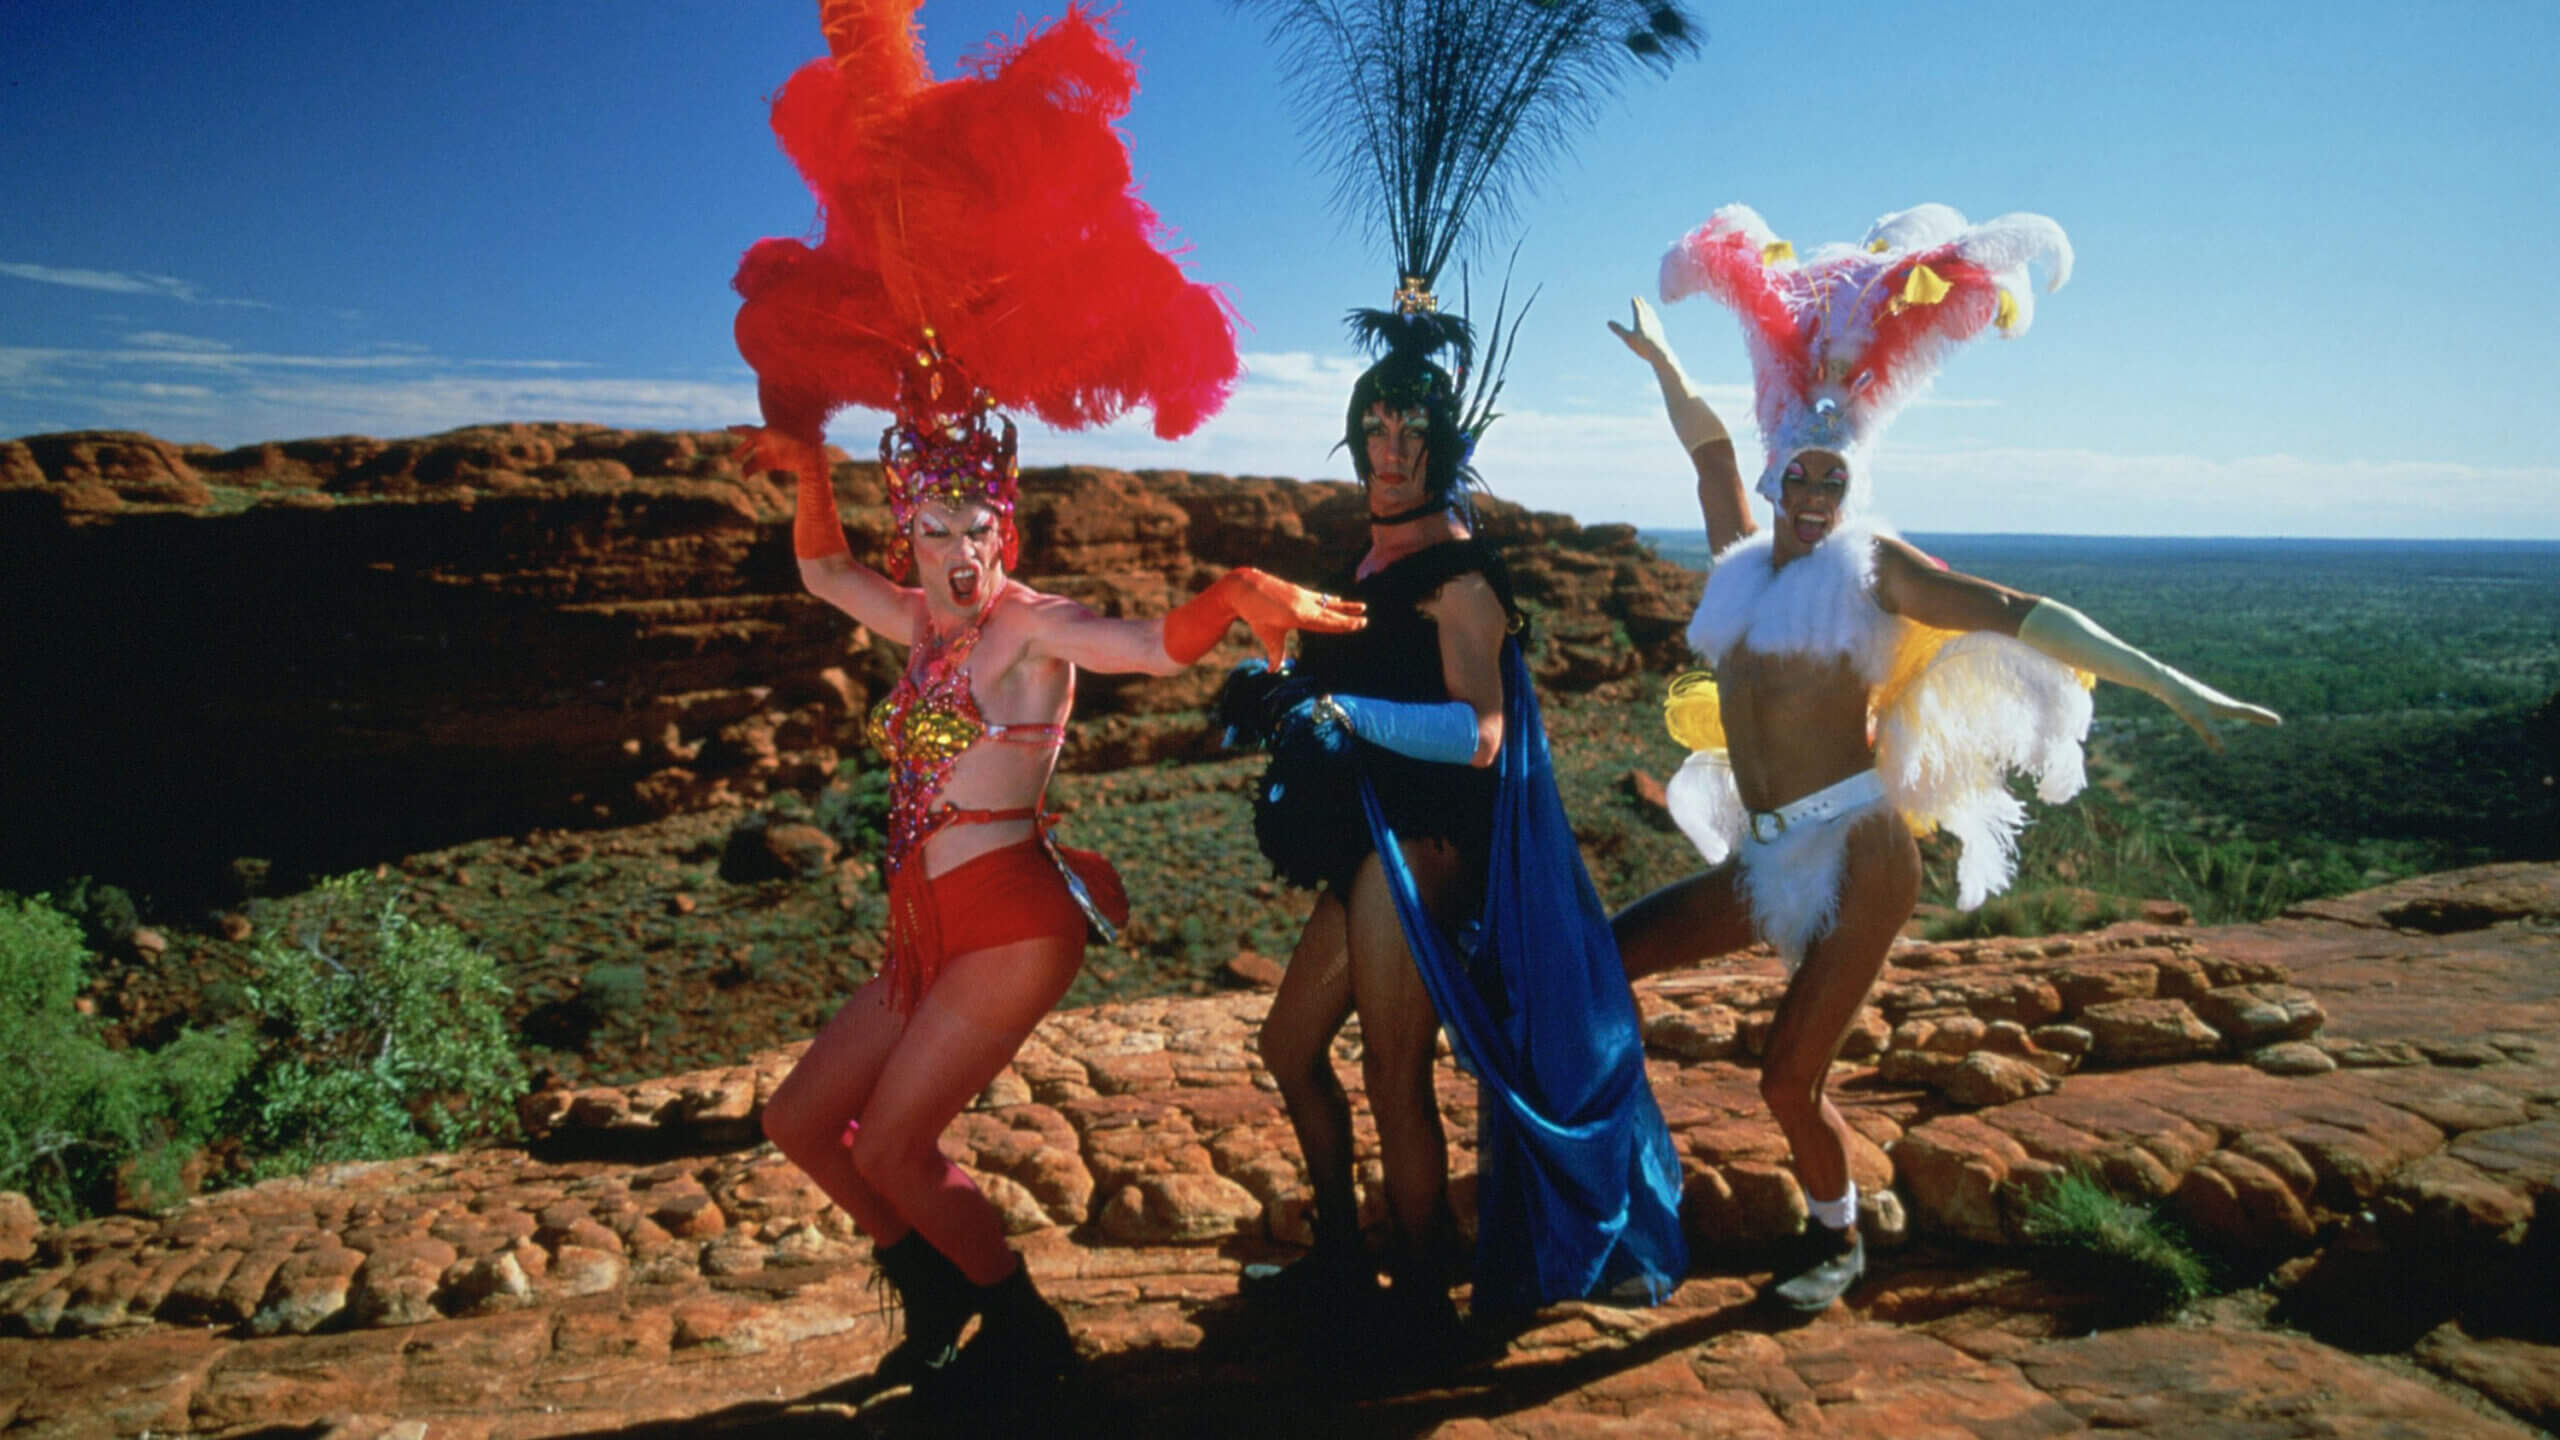 Hugo Weaving, Guy Pearce et Terence Stamp en drag dans une scène du film The Adventures of Priscilla, Queen of the Desert.